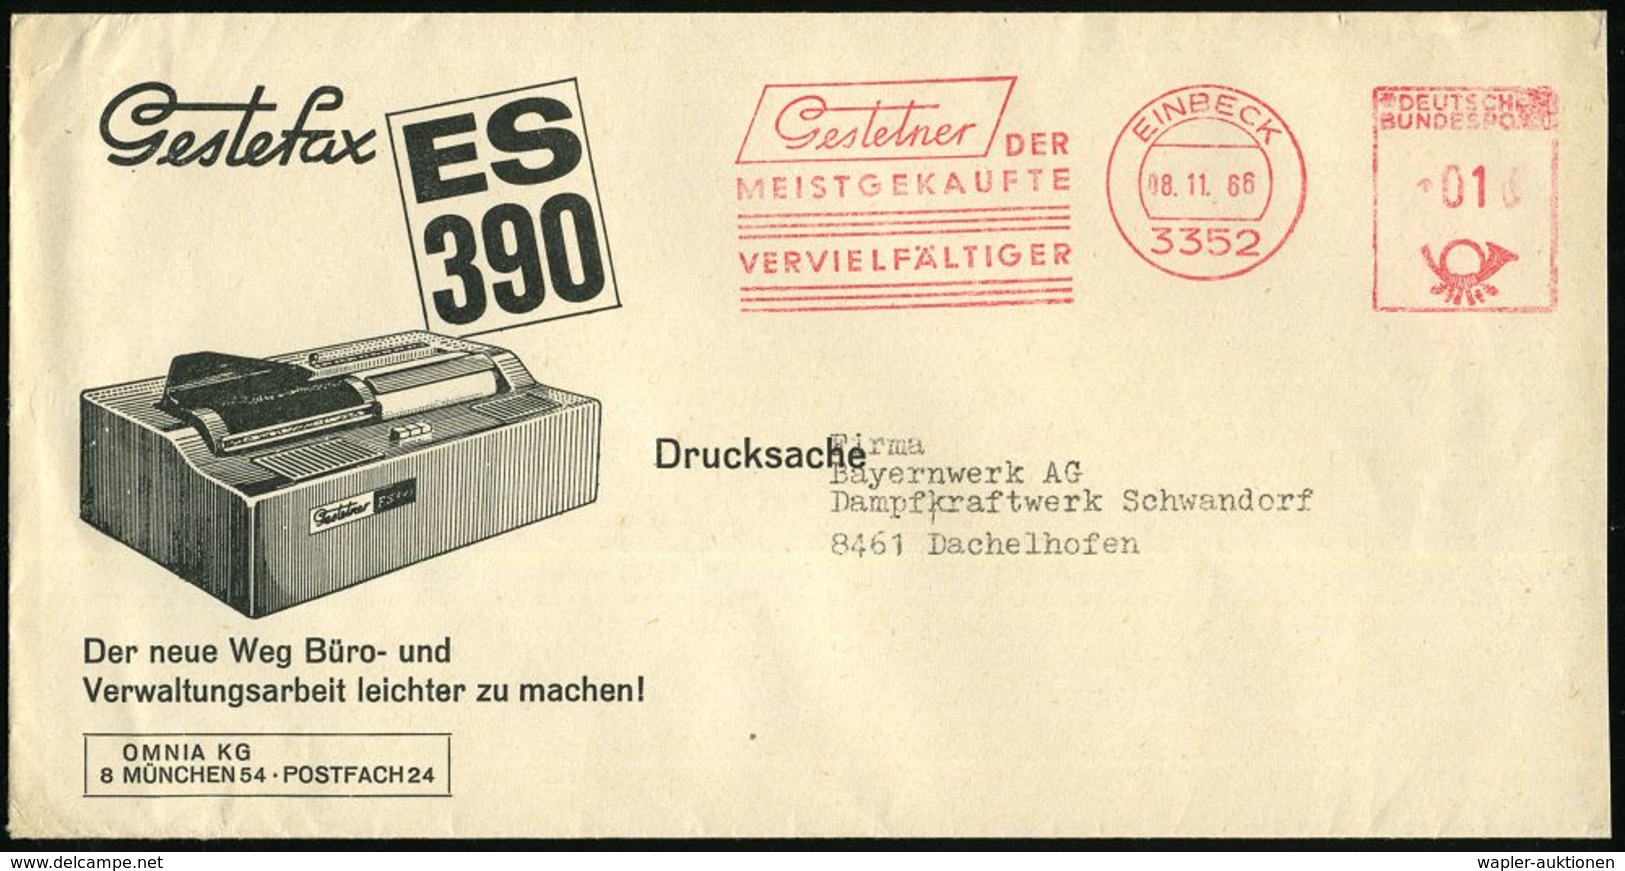 3352 EINBECK/ Gestetner/ DER/ MEISTGEKAUFTE/ VERVIELFÄLTIGER 1966 (8.11.) AFS Auf Reklame-Bf.: Gestefax ES 390 = Frühes  - Zonder Classificatie